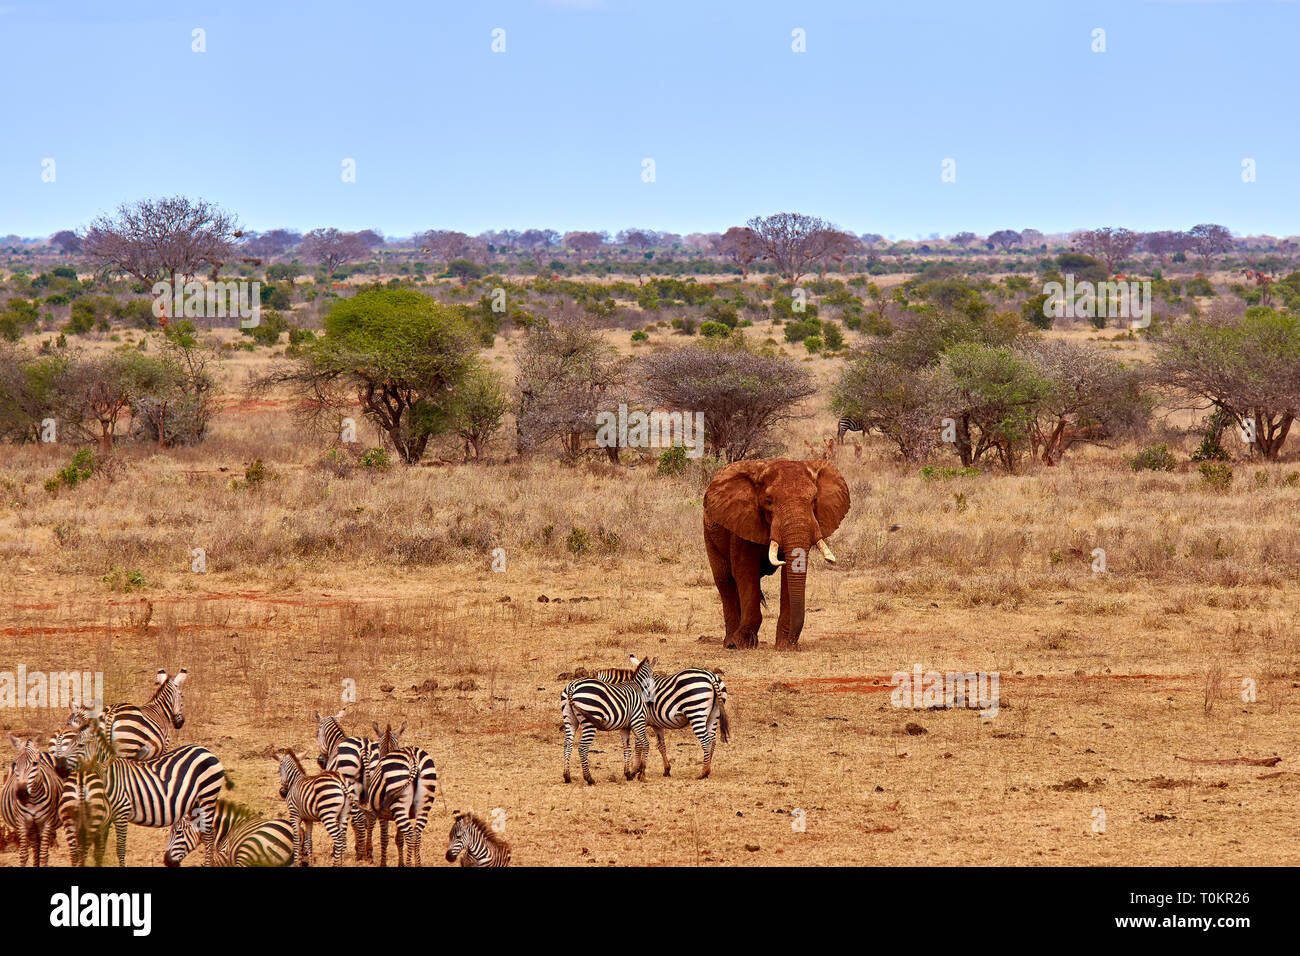 Landschaft in Safari anzeigen. Kenia in Afrika, Elefanten und Zebras in der Savanne zwischen den Bäumen. Stockfoto